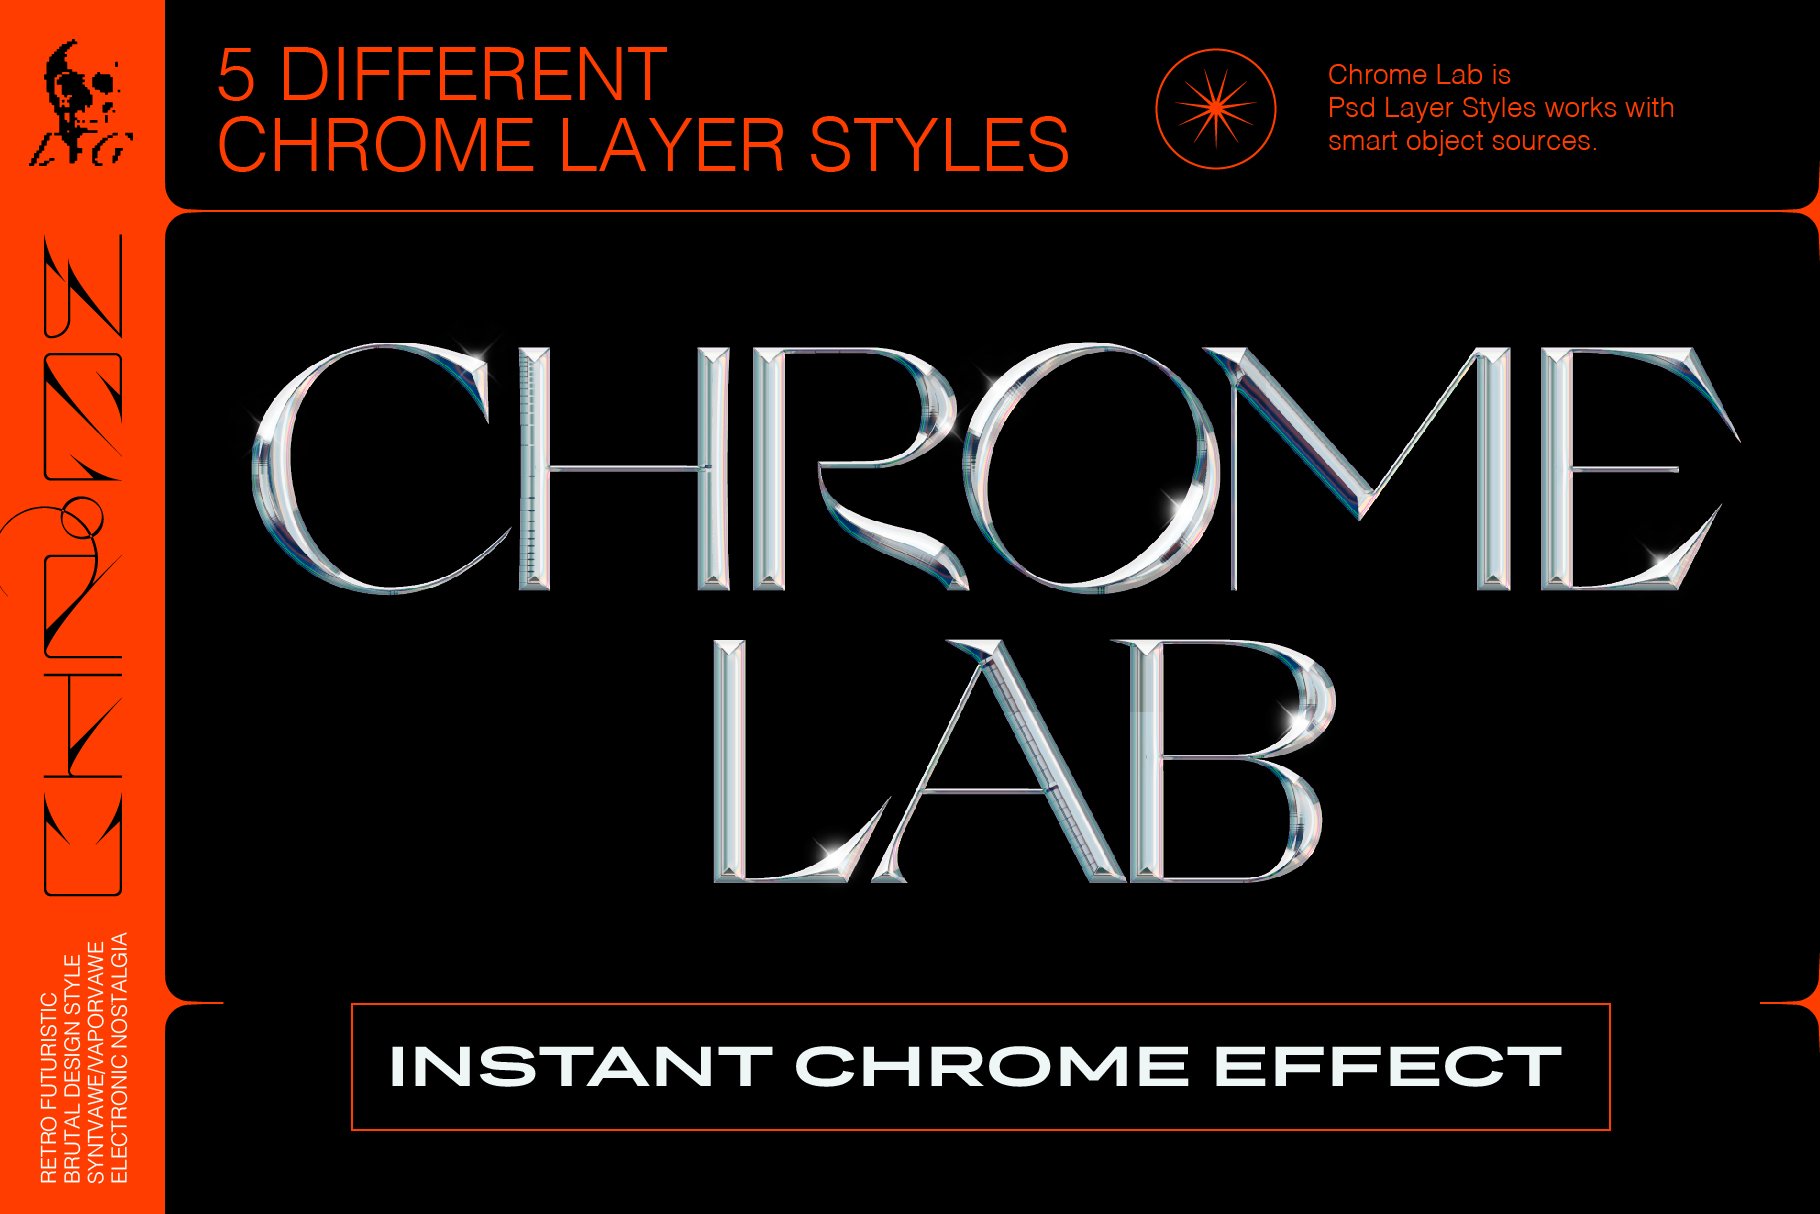 5种复古未来主义抽象酸性外观镀铬元素PSD字体样式合集 Chrome Lab 设计素材 第1张